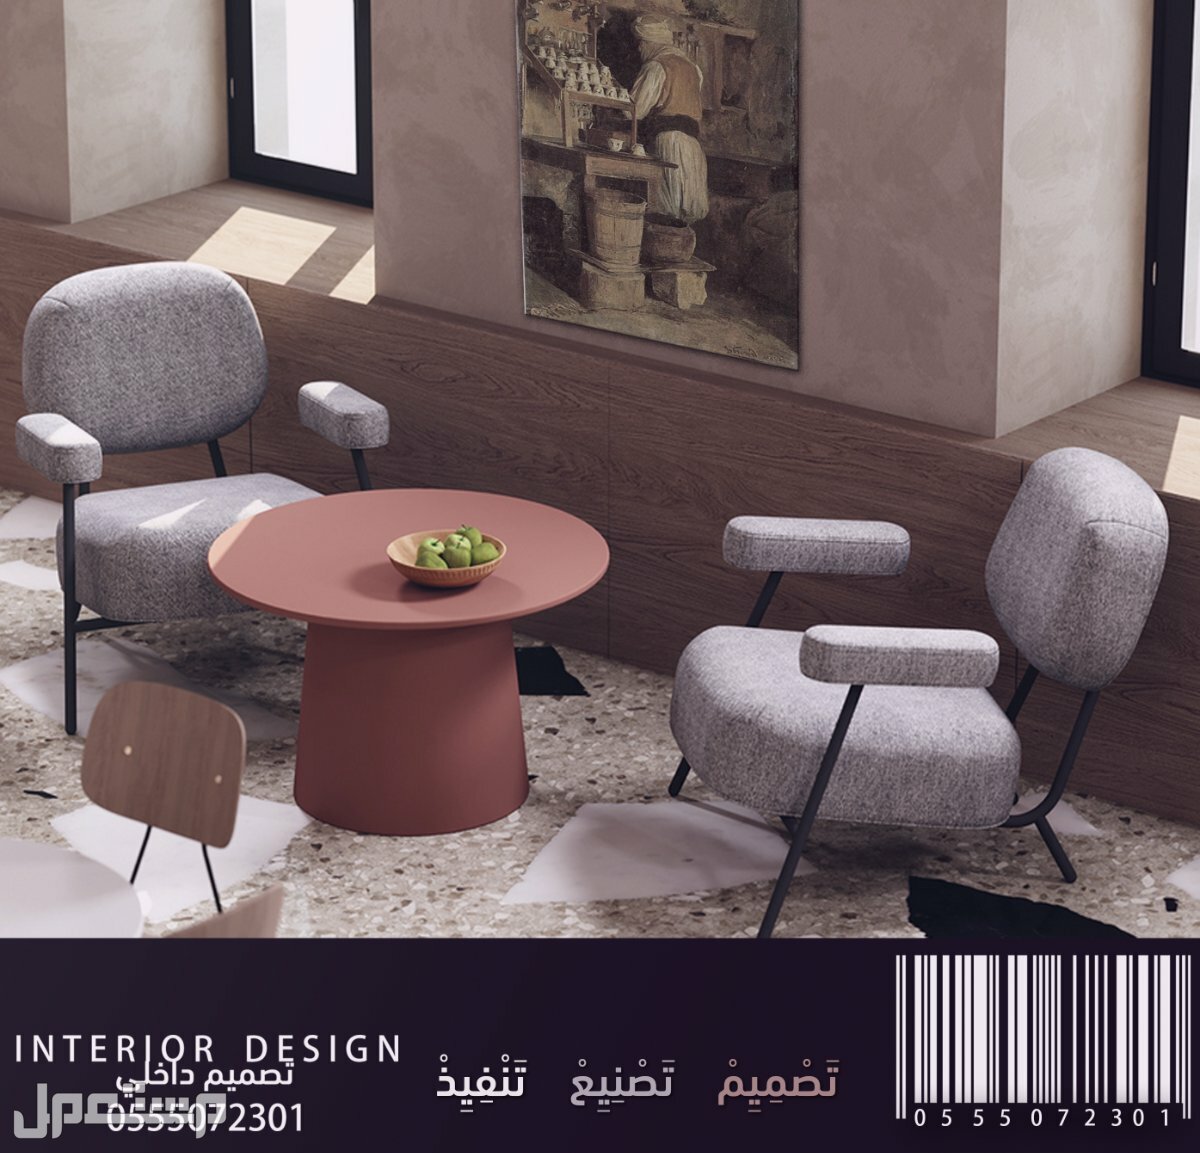 تصميم داخلي لتصميم الكافيهات و تصميم المطاعم والمحلات التجارية